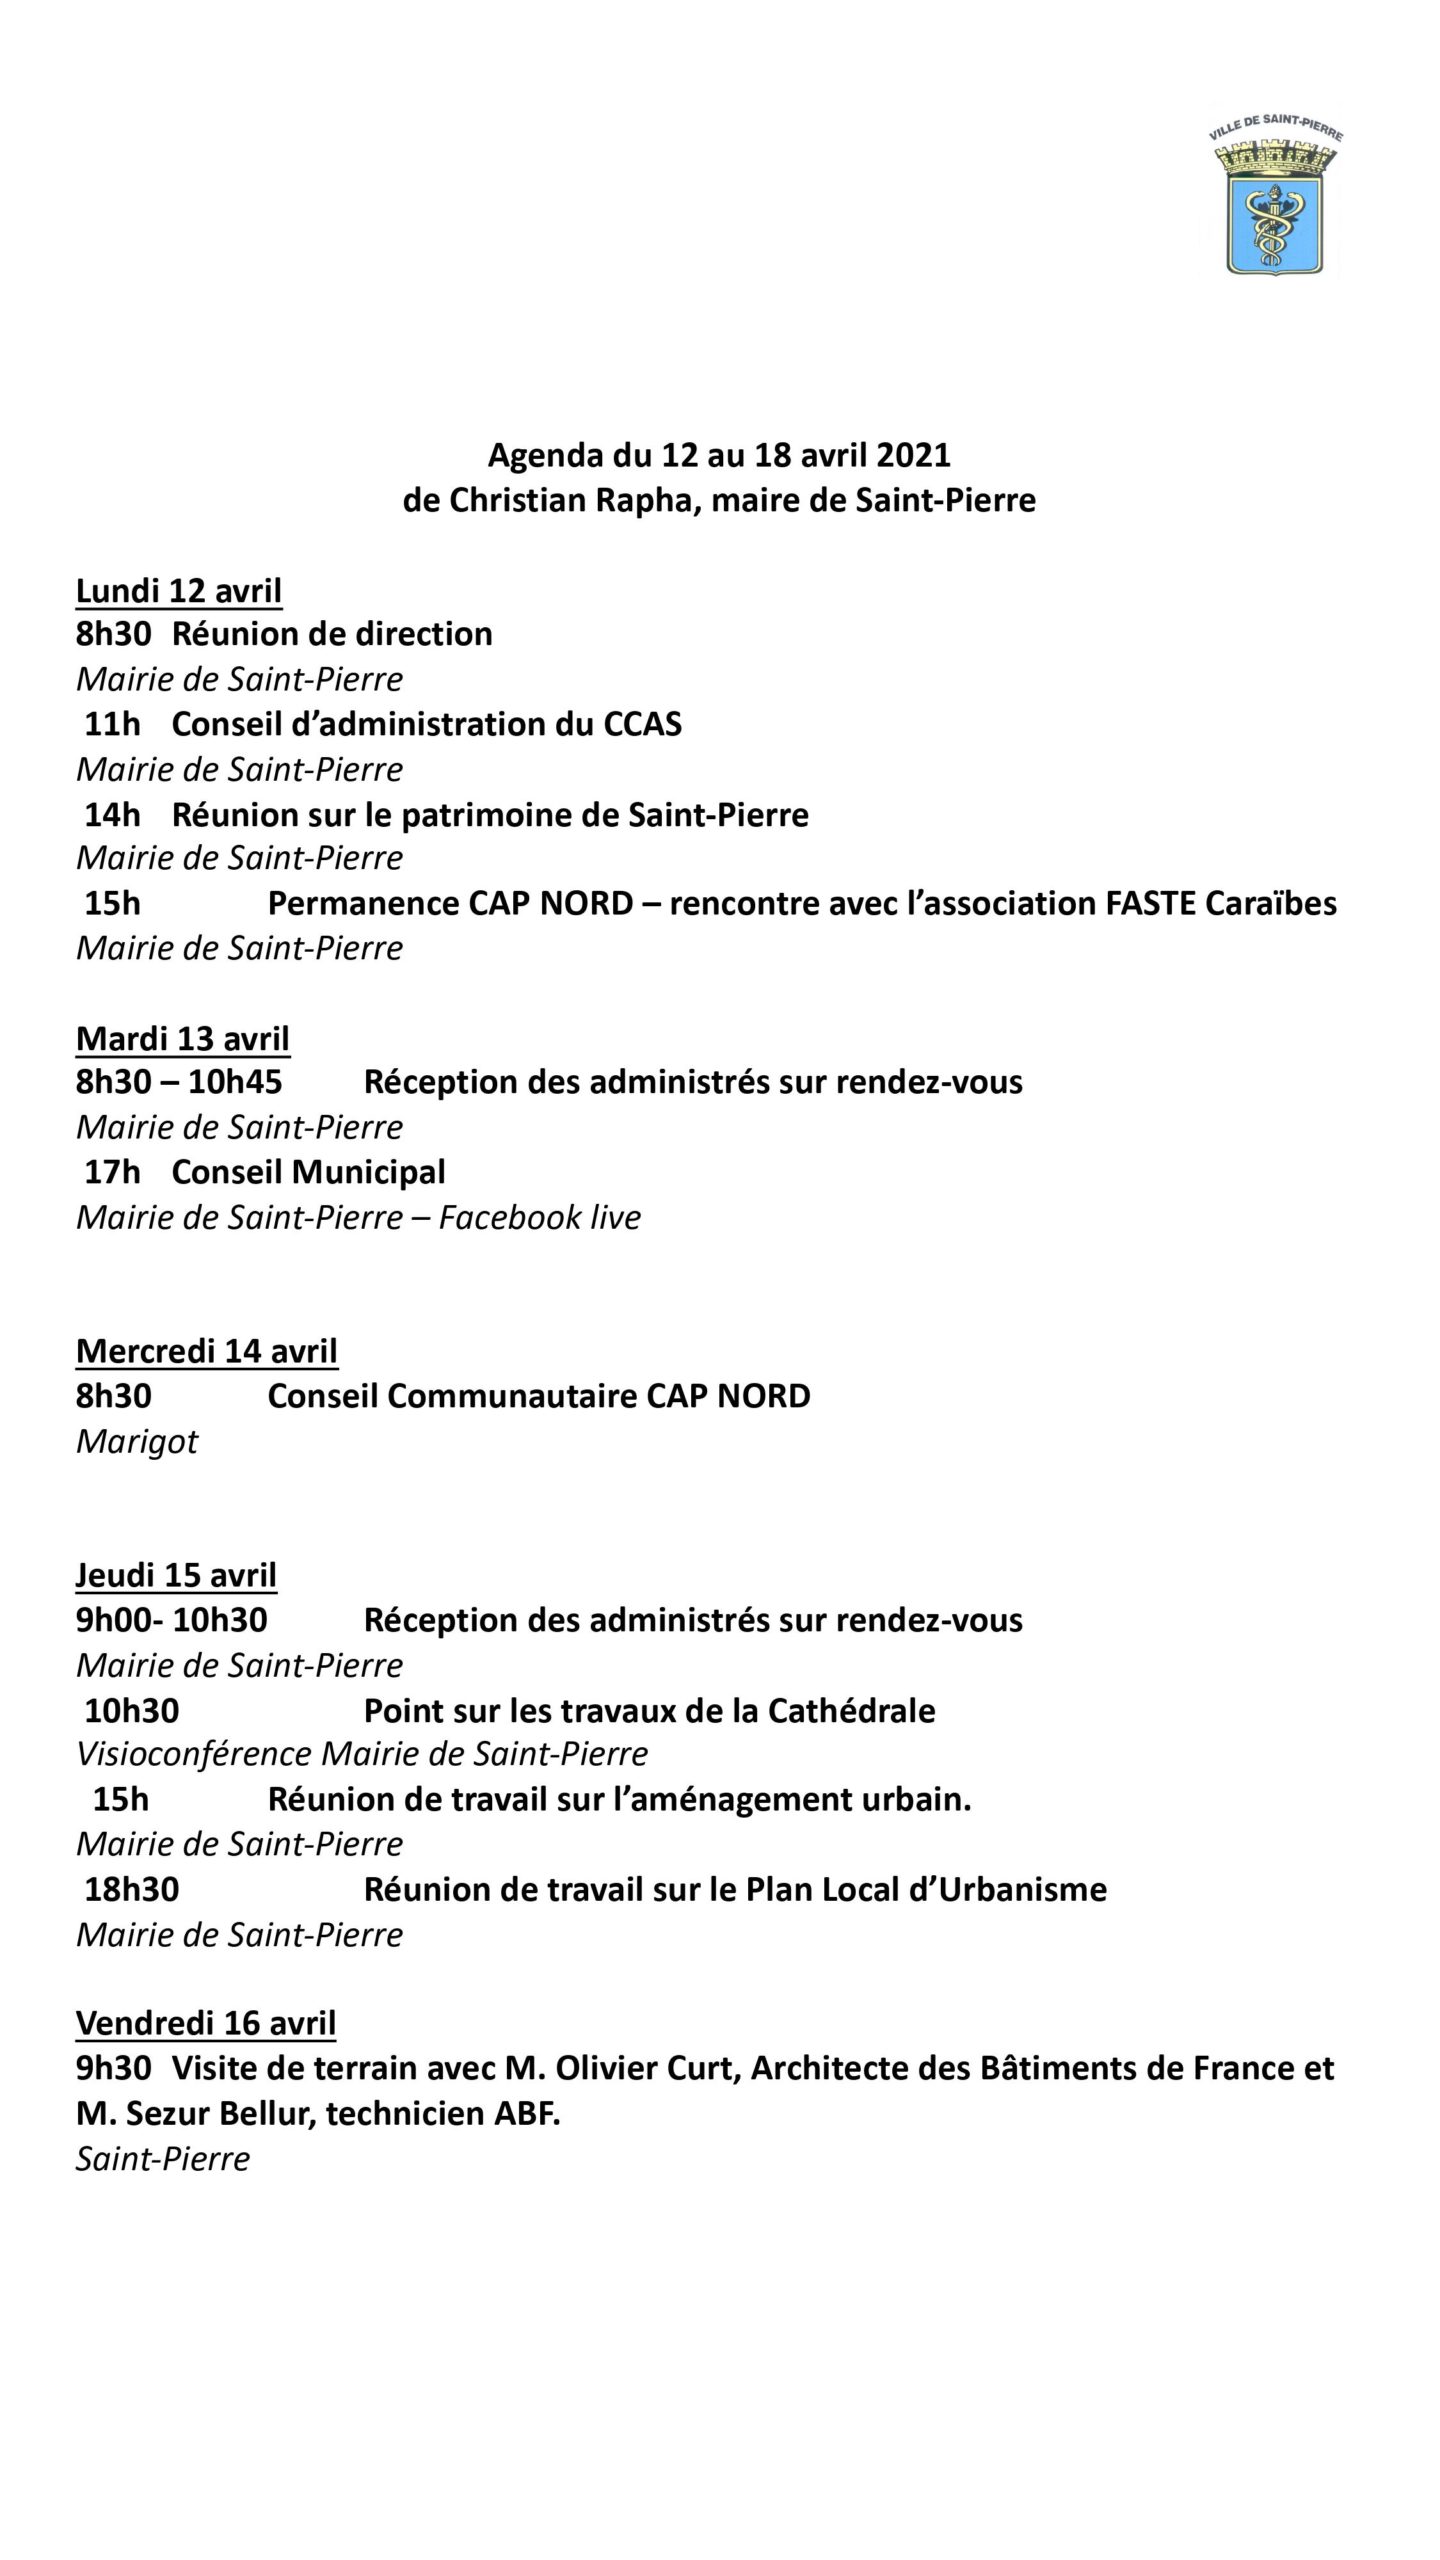 agenda_du_12_au_18_avril_2021.jpg